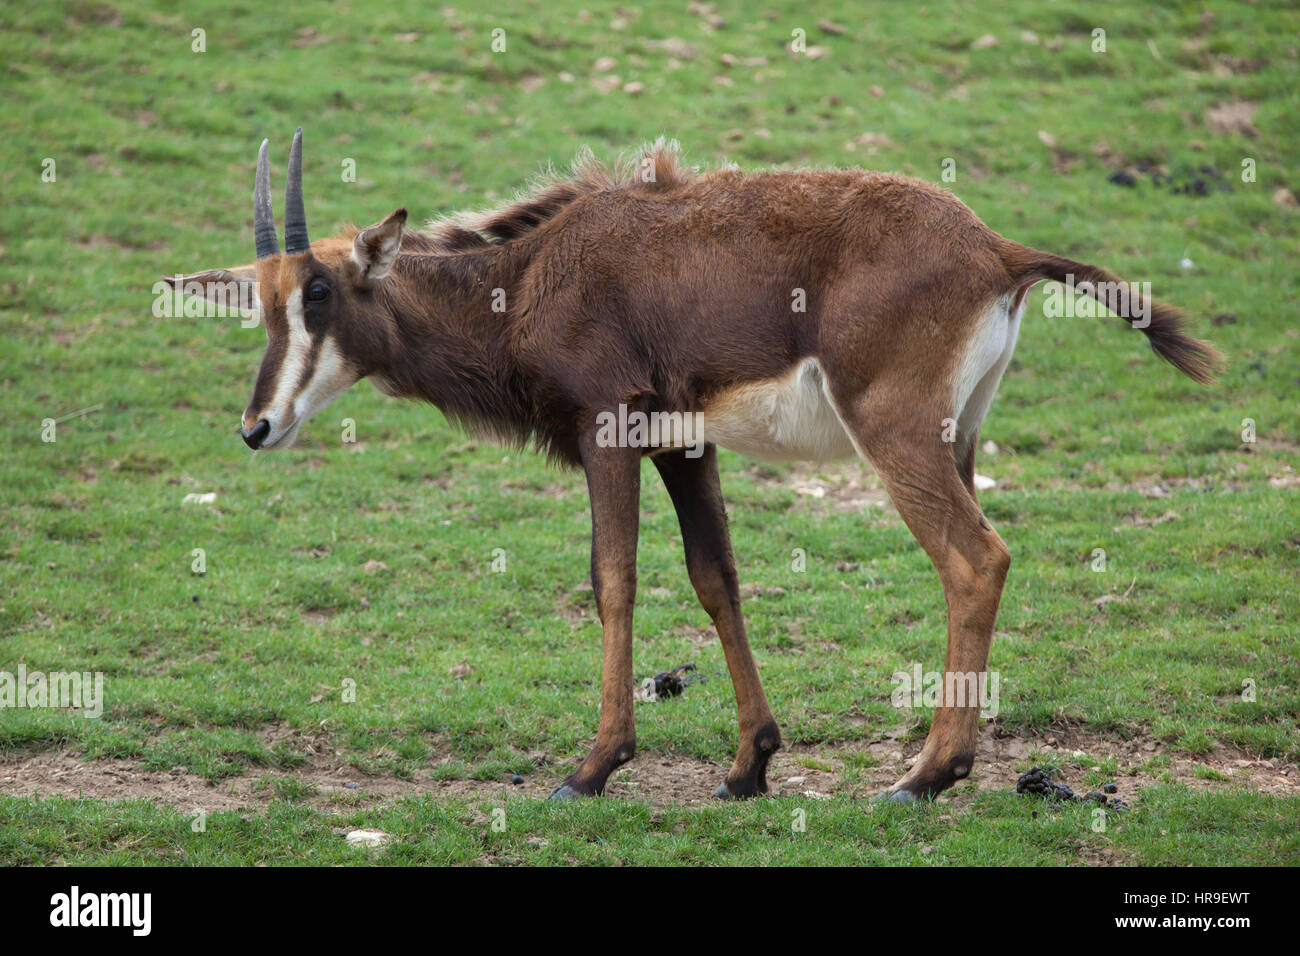 Hippotrague (Hippotragus niger), également connu sous le nom de l'antilope noire. Banque D'Images